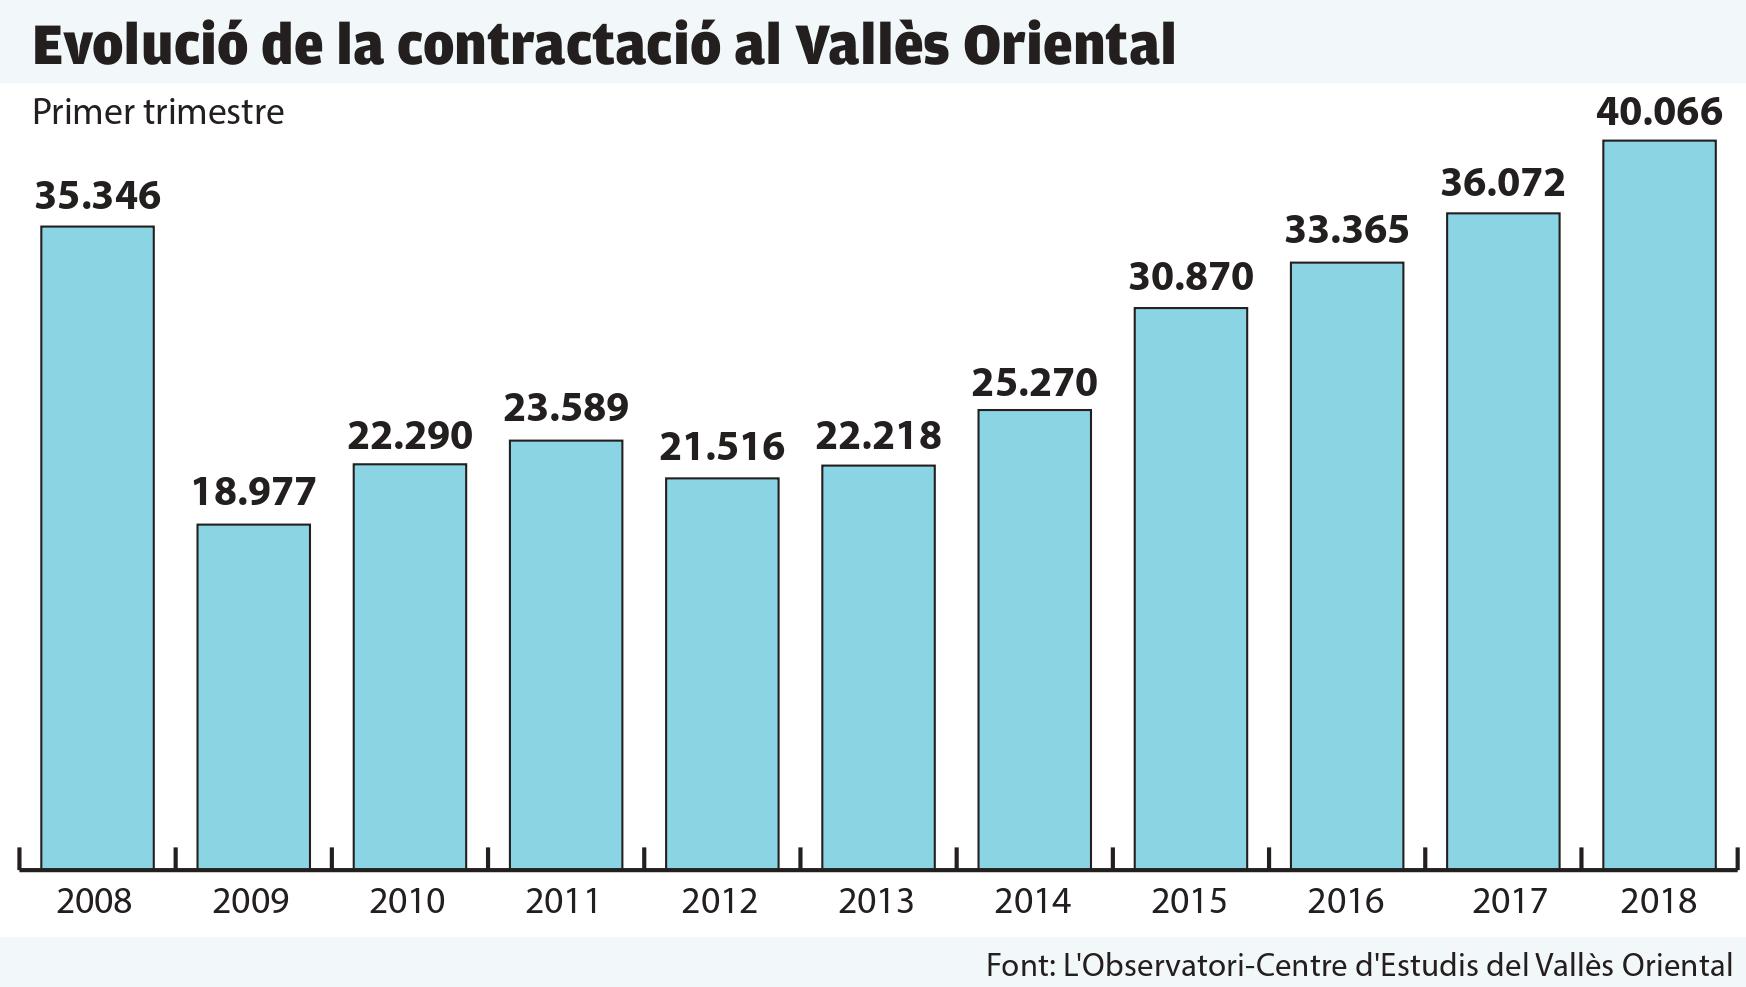 Evolució de la contractació durant els primers trimestres de l'any a la comarca